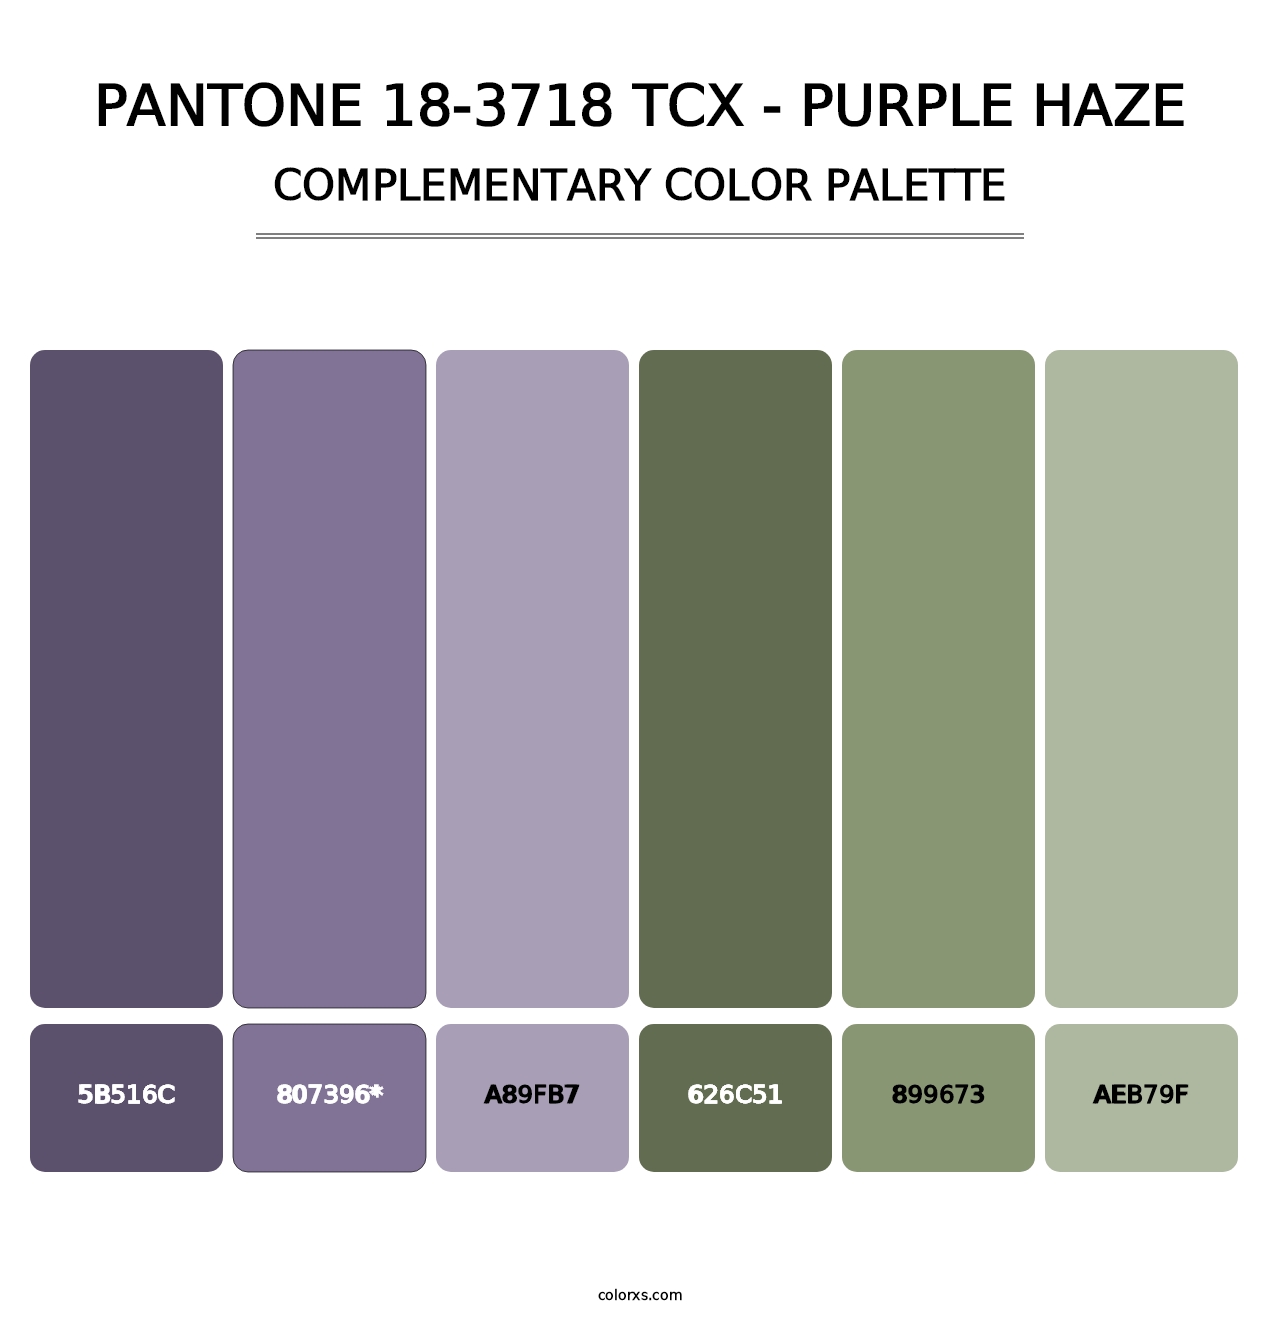 PANTONE 18-3718 TCX - Purple Haze - Complementary Color Palette